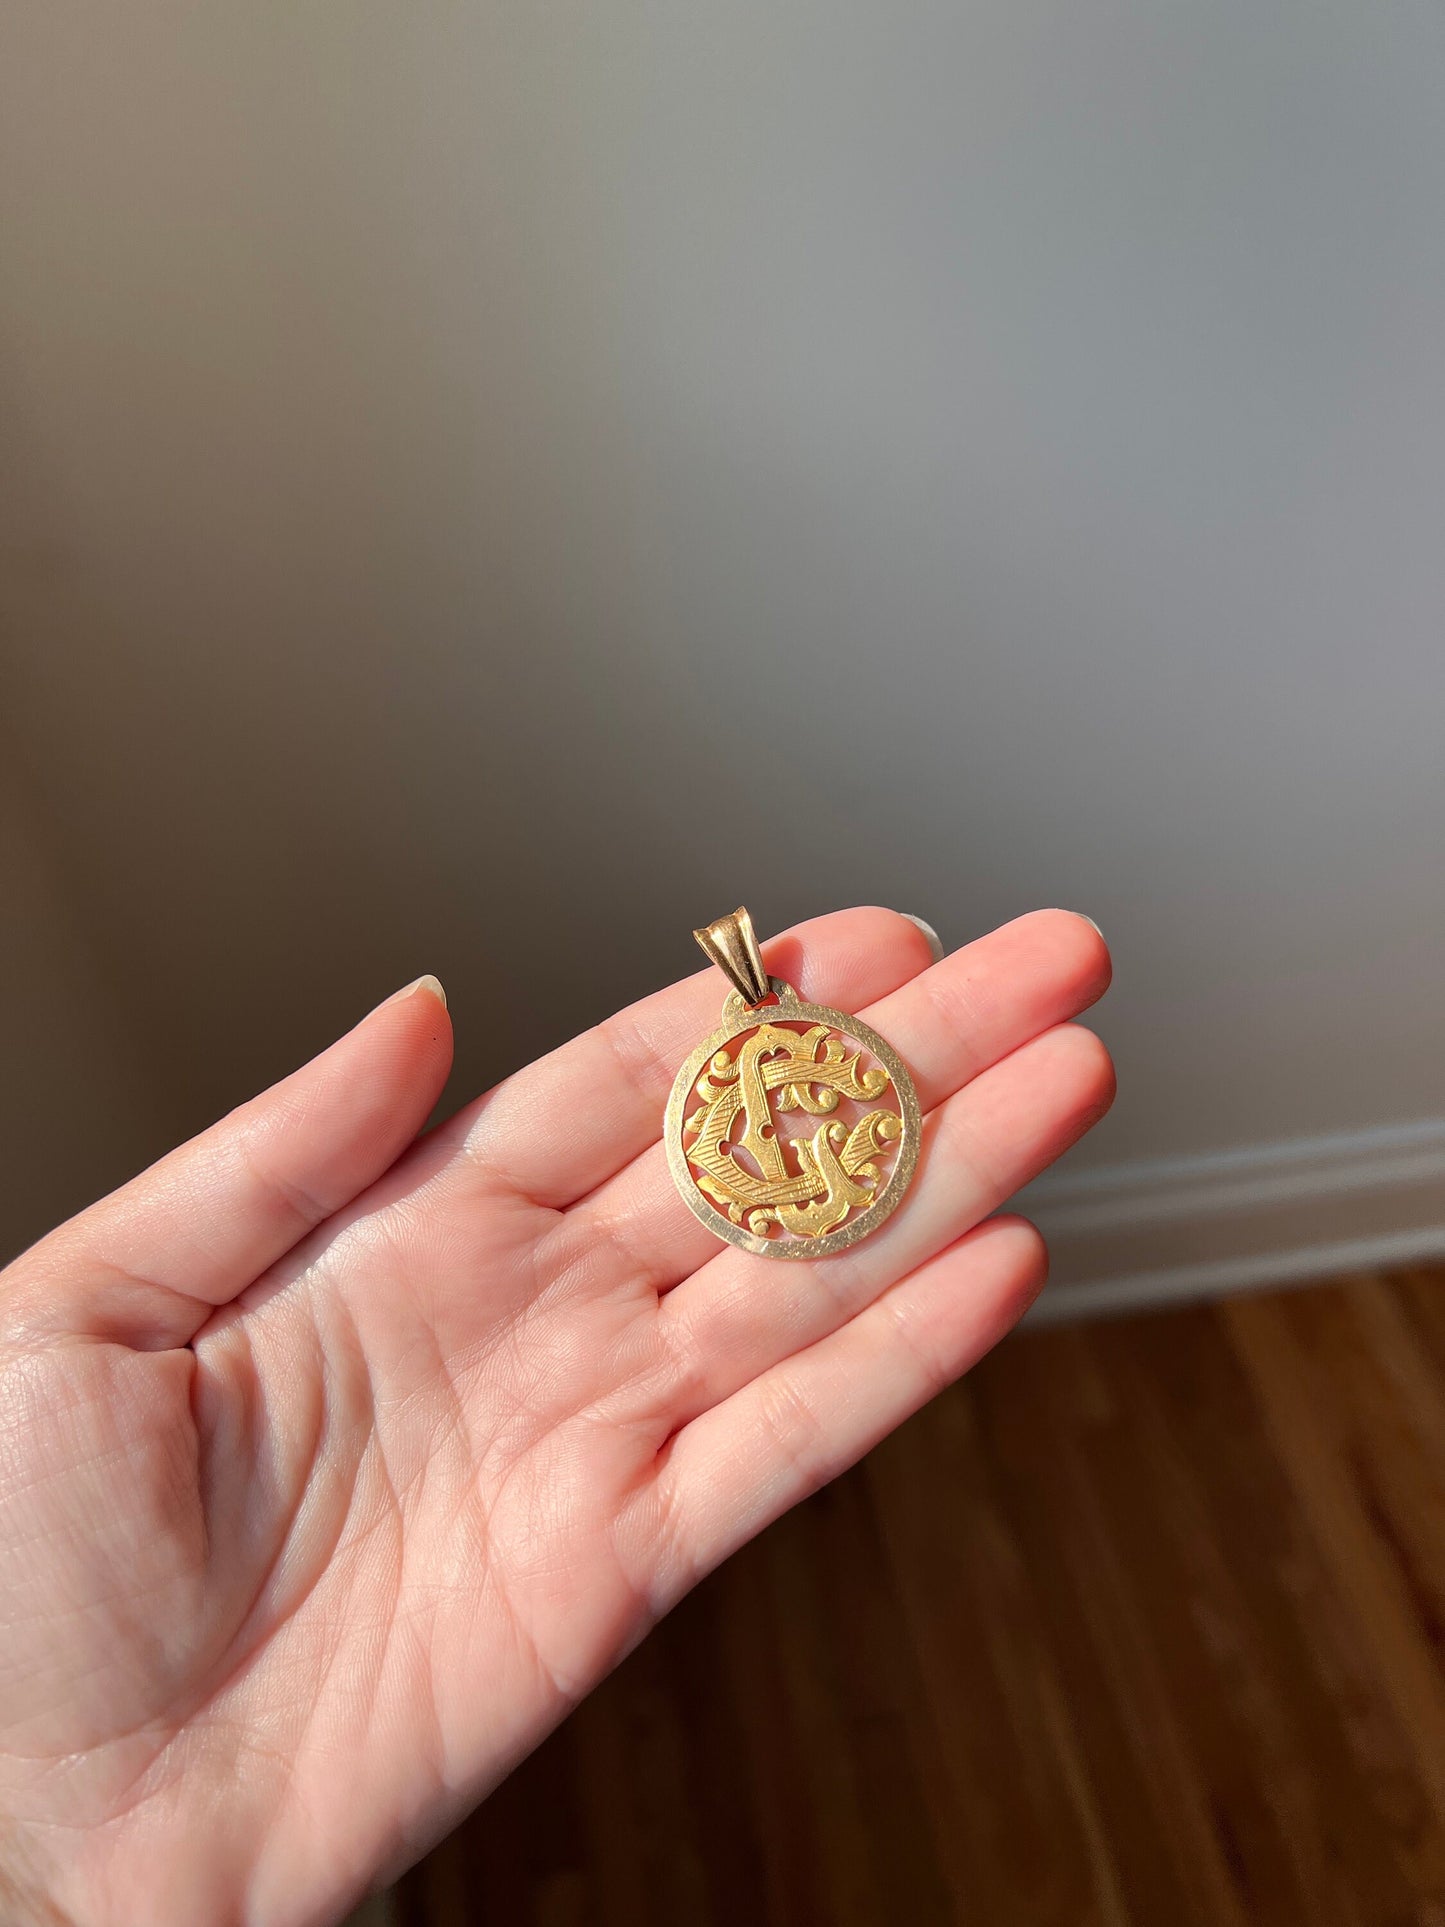 XL Large French Antique Medallion Pendant 10.5g 18k Gold Romantic Gift Belle Epoque Art Nouveau Victorian Ornate Monogram Initials Cc Gc Cg